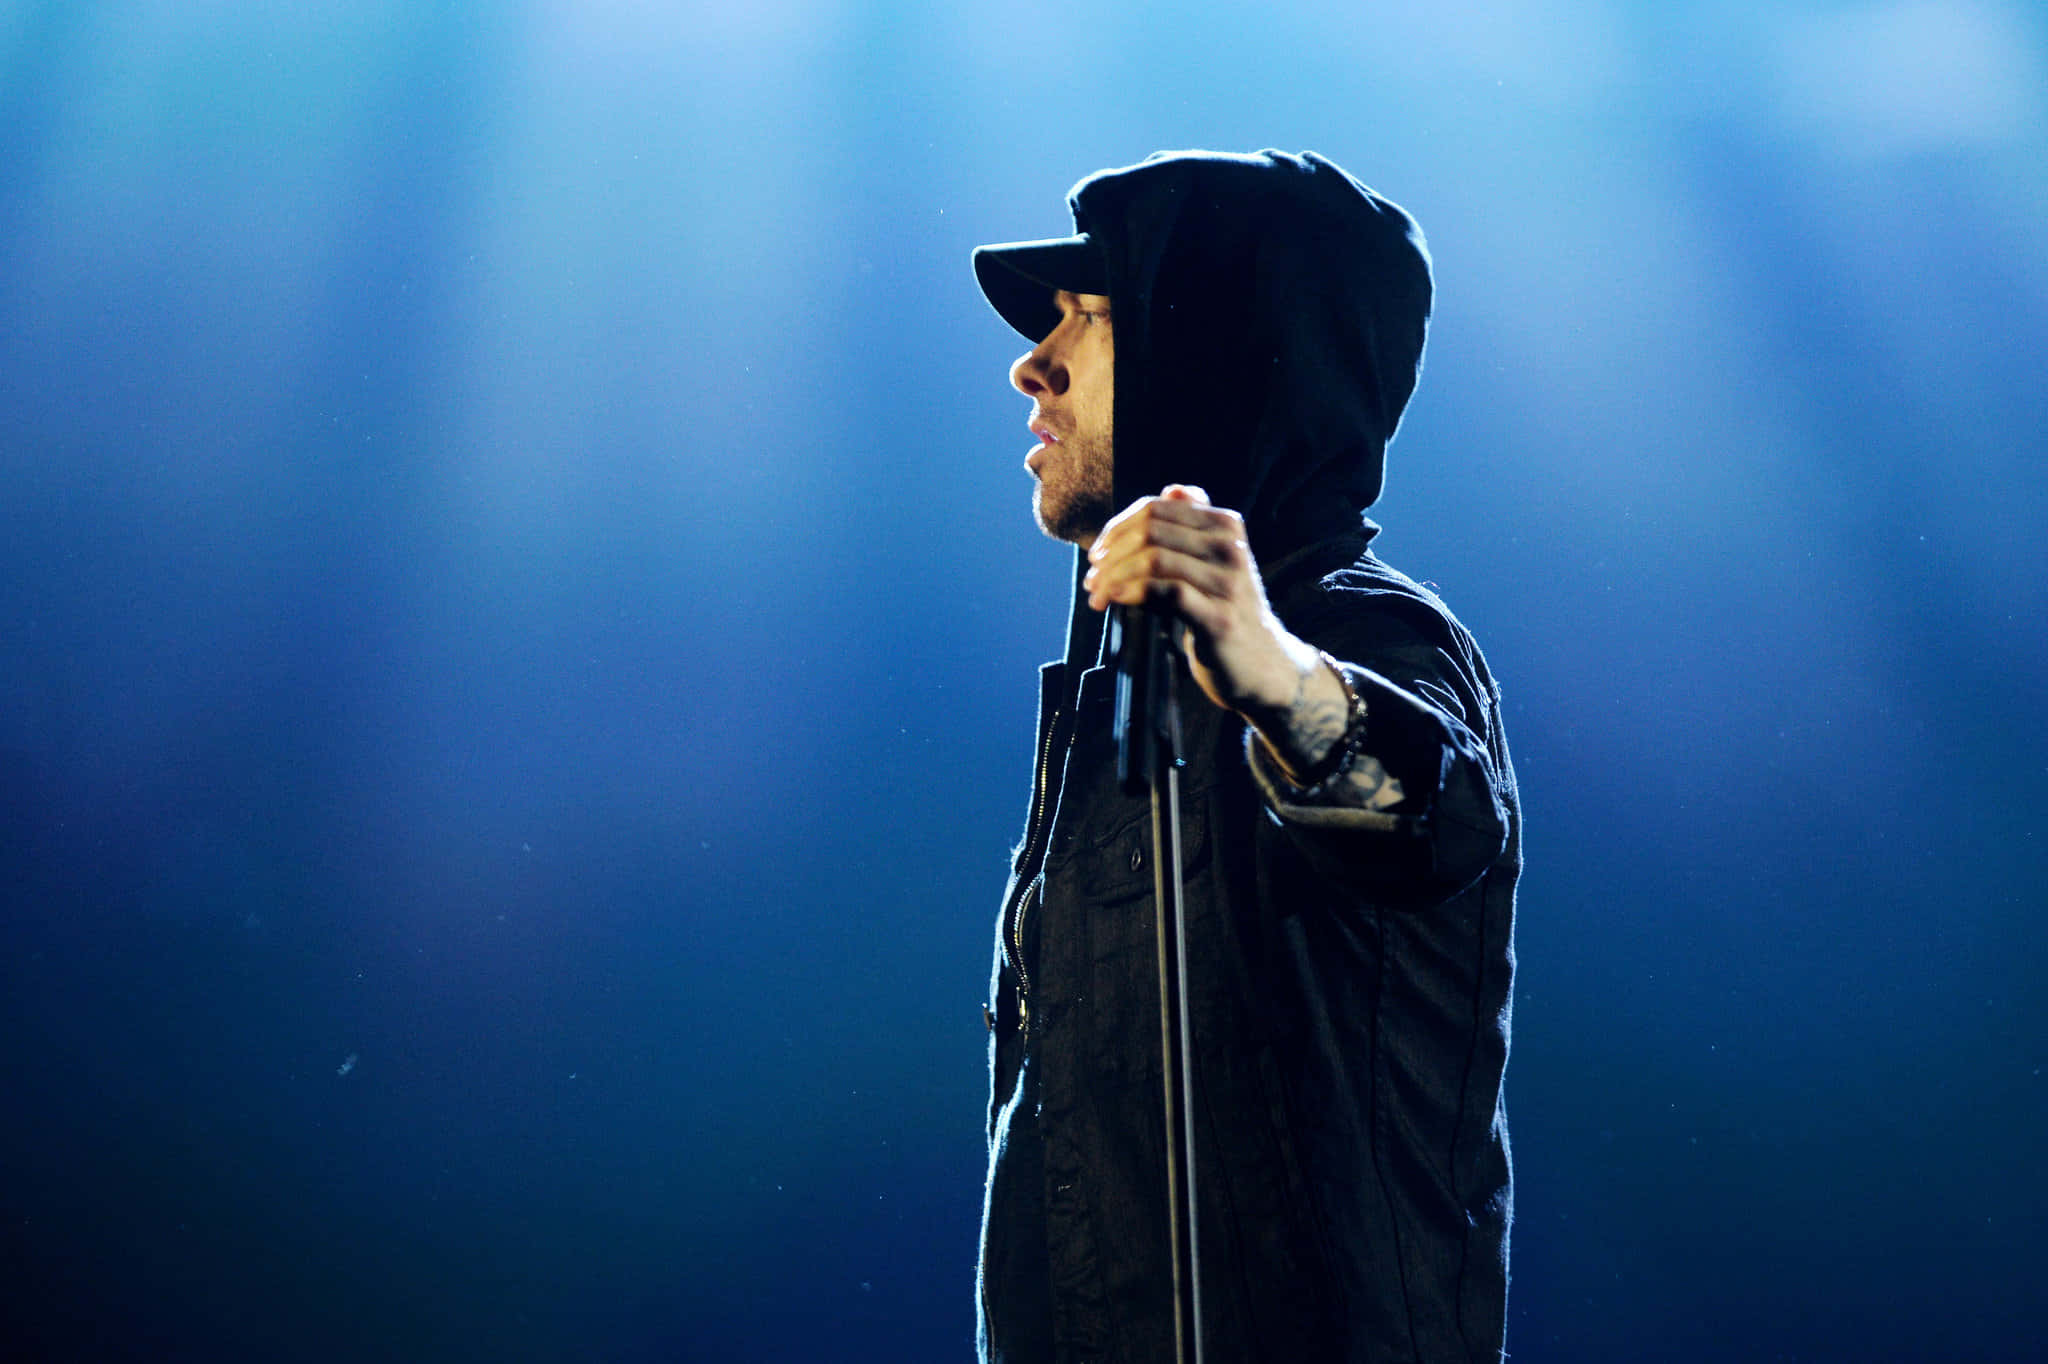 Eminembillede I Størrelsen 2048 X 1364